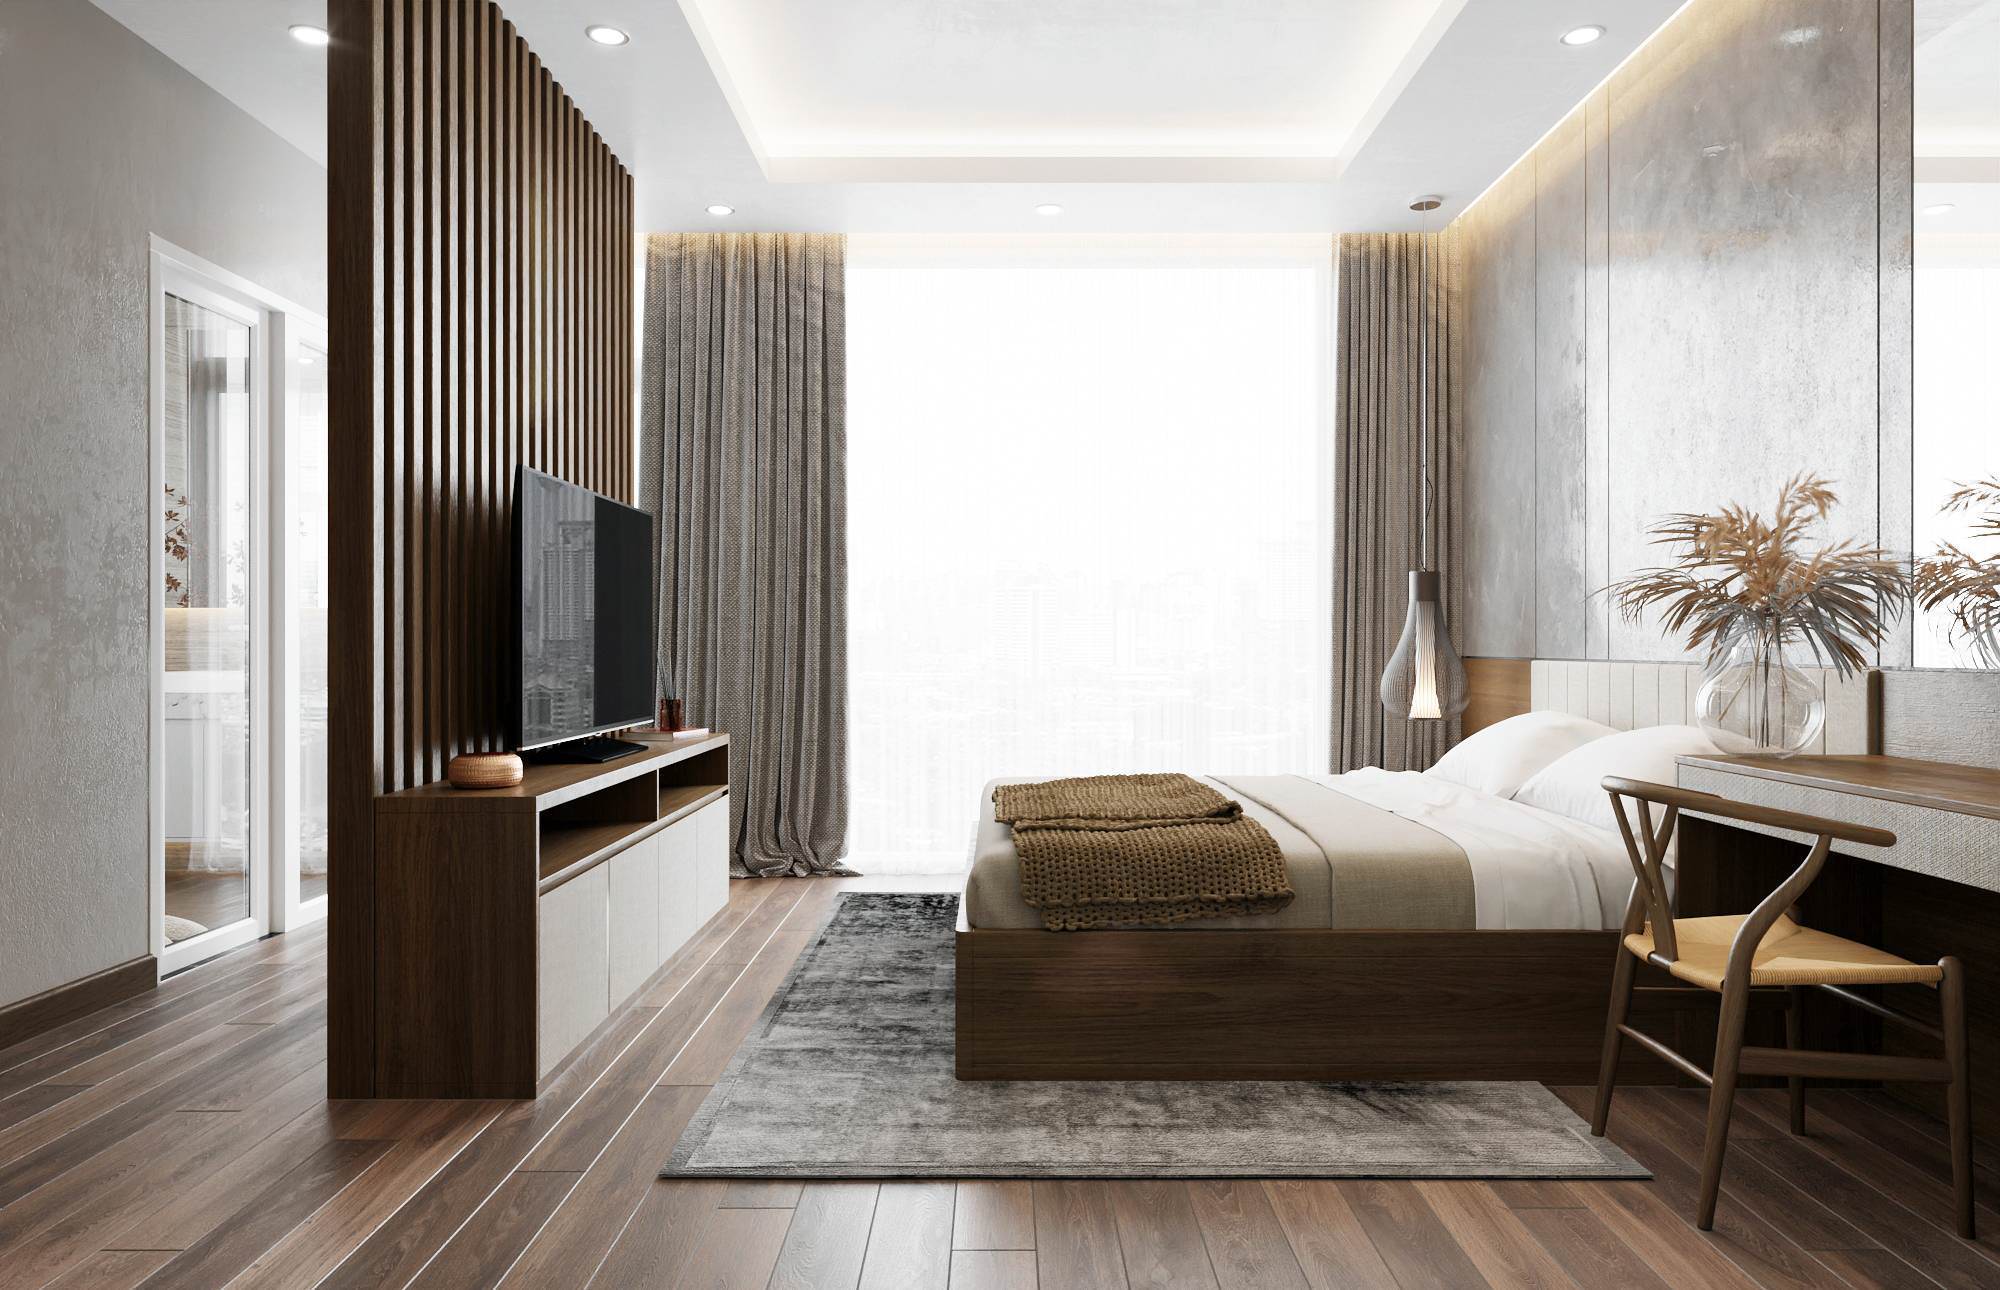 Phân chia không gian phòng ngủ và nhà vệ sinh bằng vách ốp lam gỗ kết hợp kệ tivi